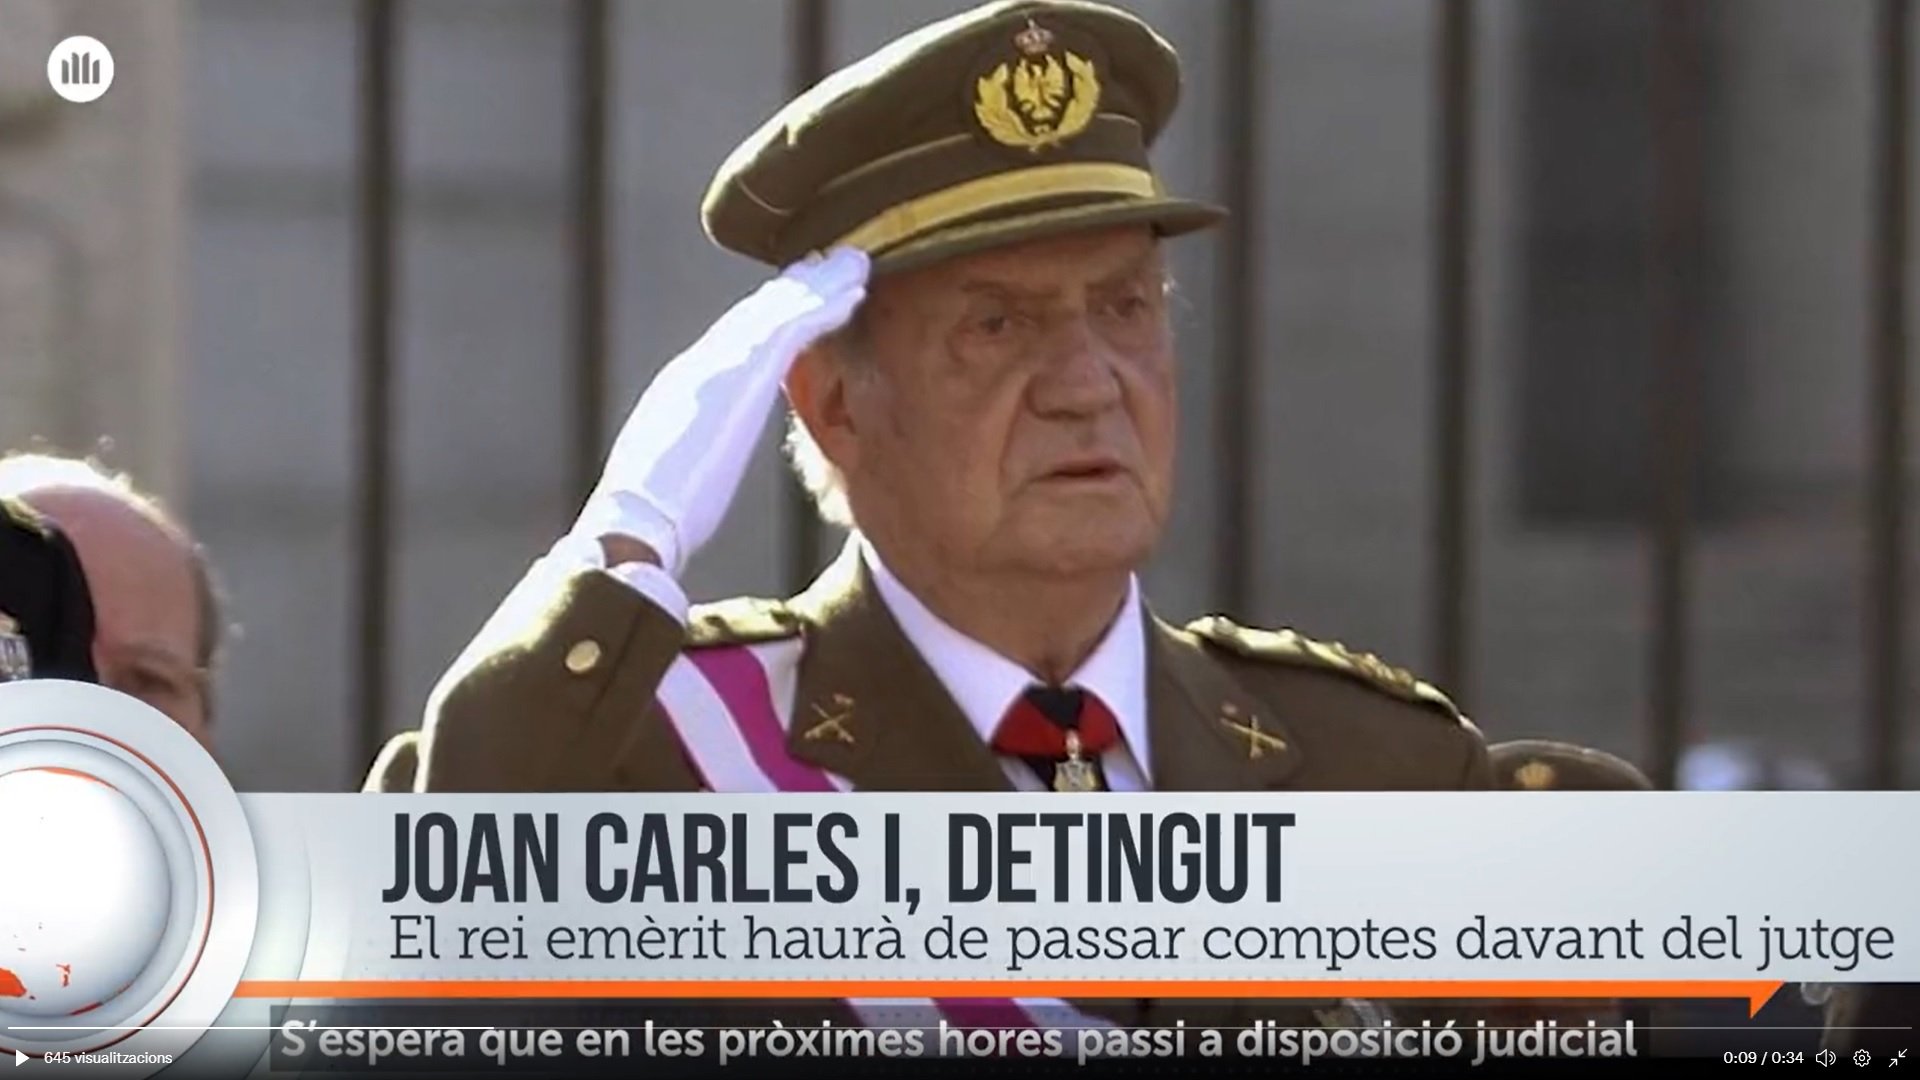 Detención del rey Juan Carlos I, según Ómnium Cultural   Captura de pantalla